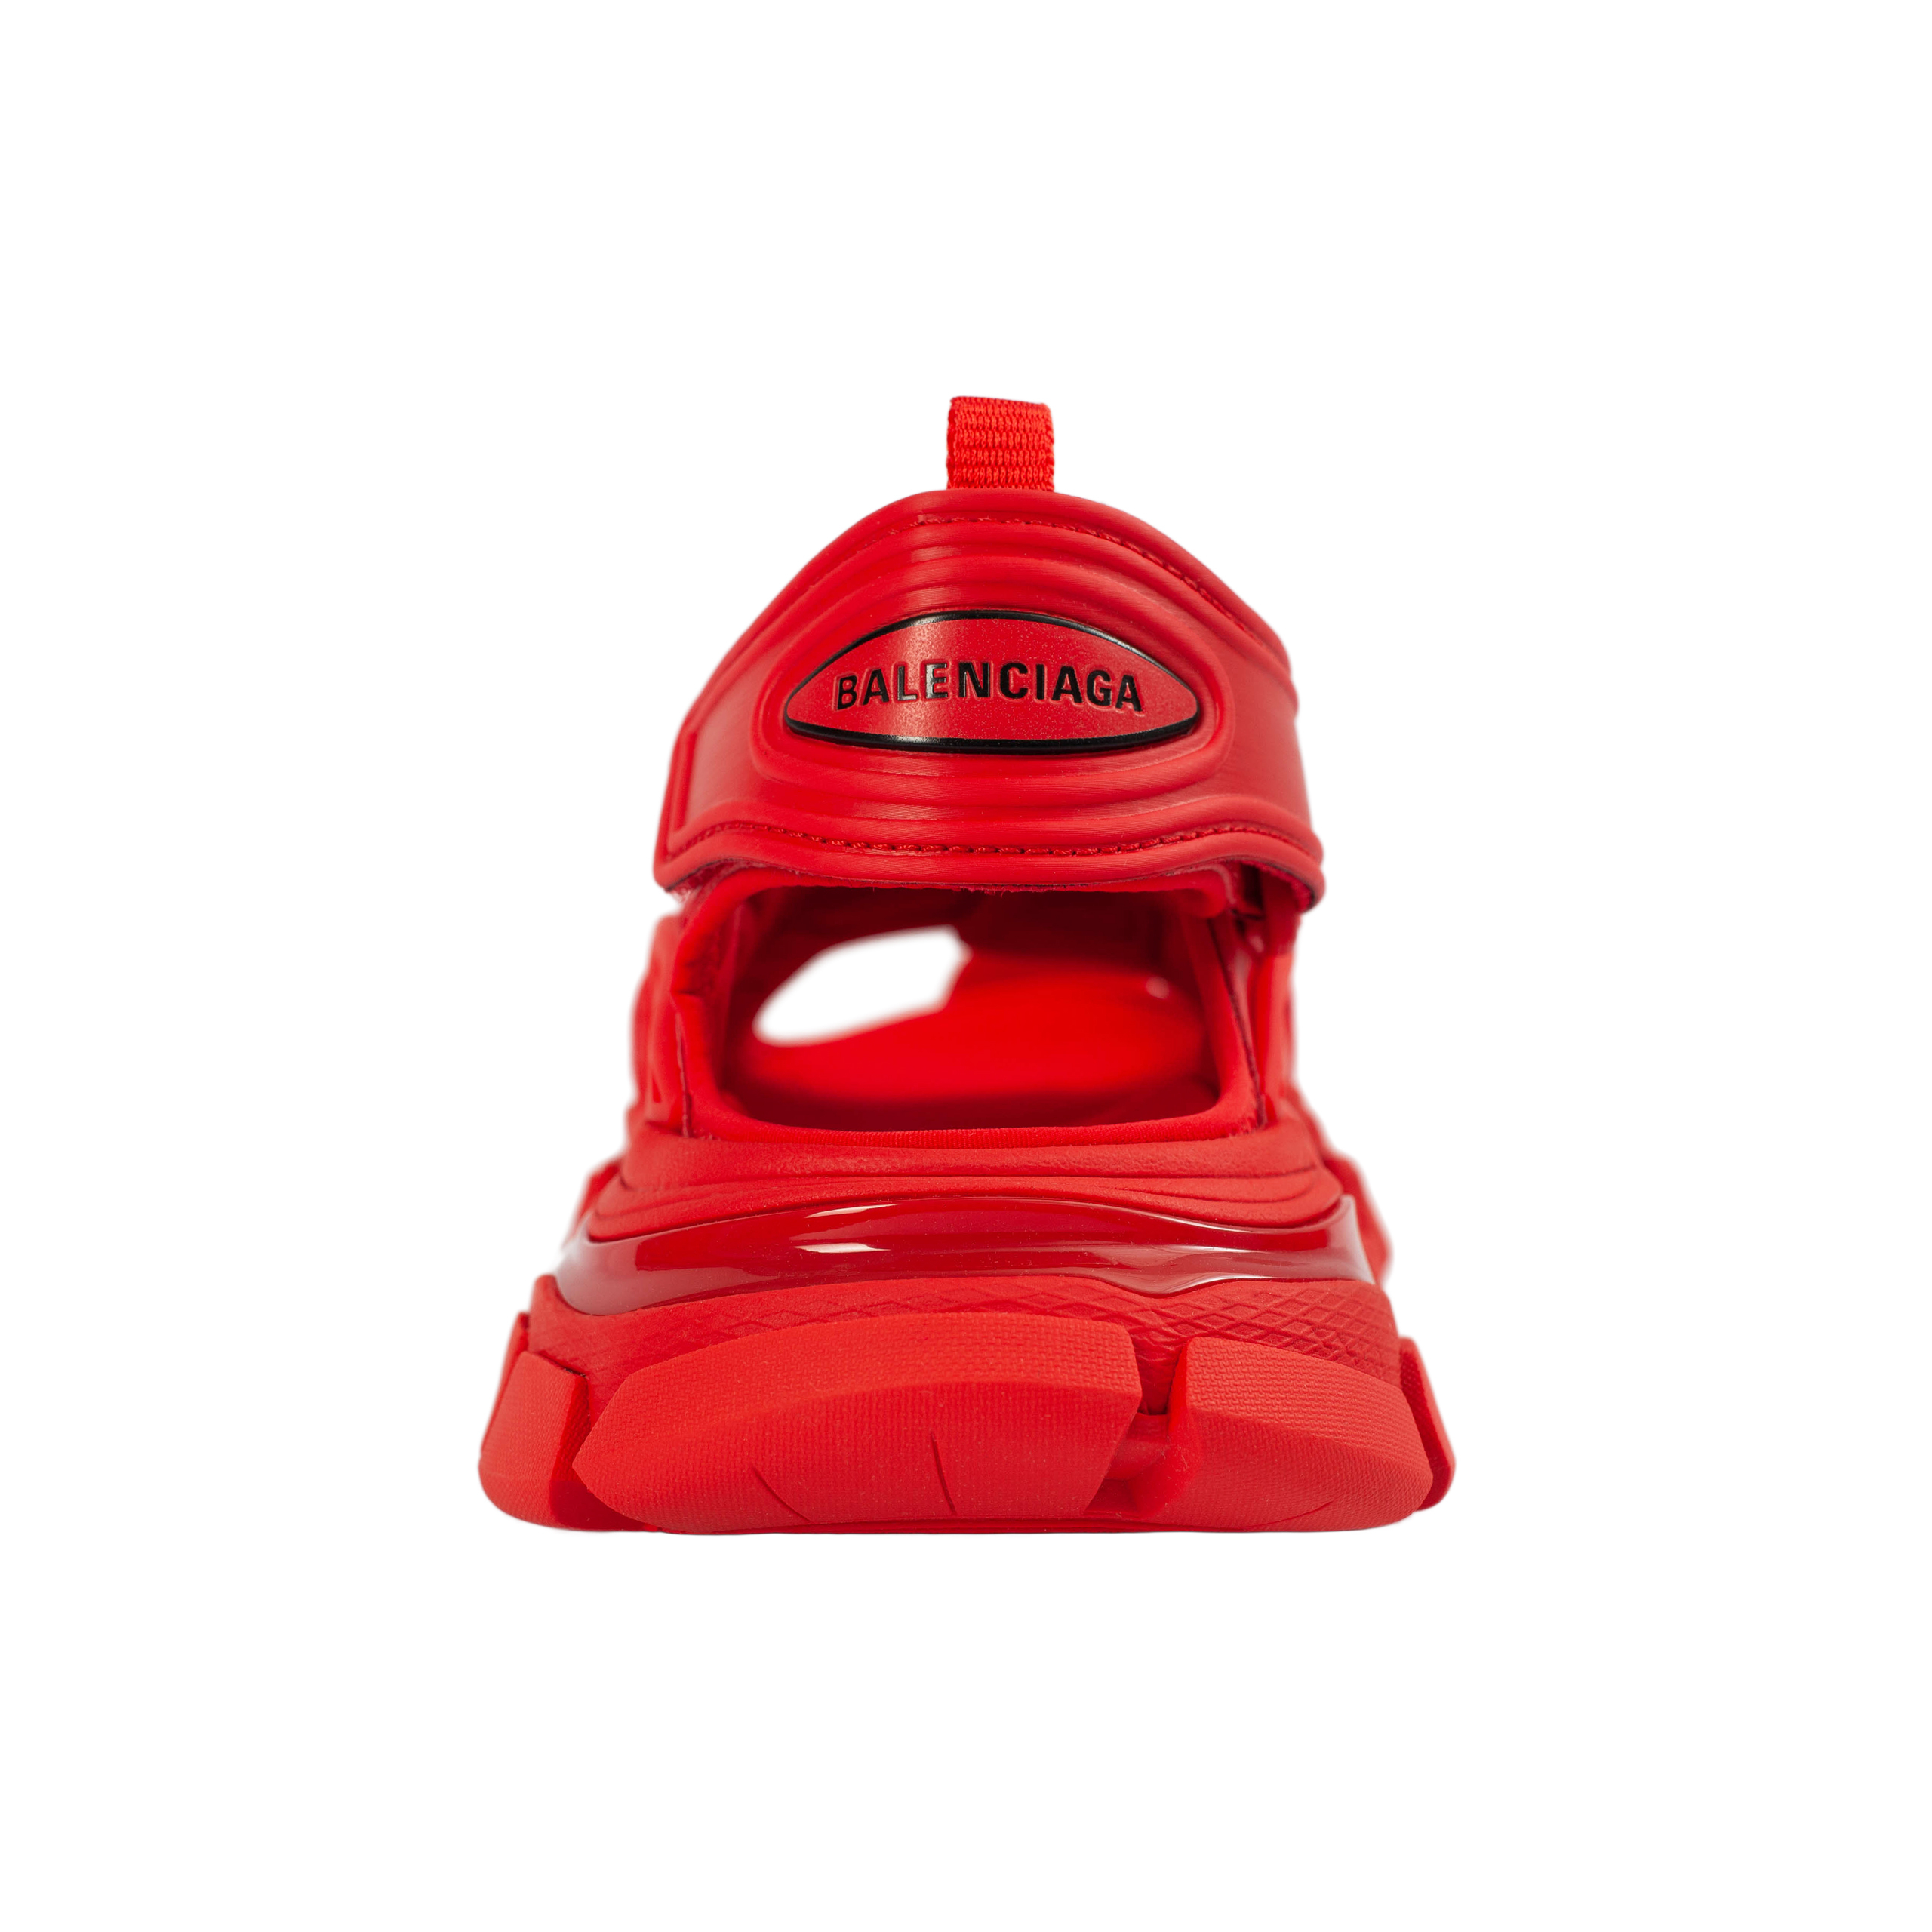 Красные сандалии Track Balenciaga 617543/W2CC1/6000, размер 40;39;38;37 617543/W2CC1/6000 - фото 6